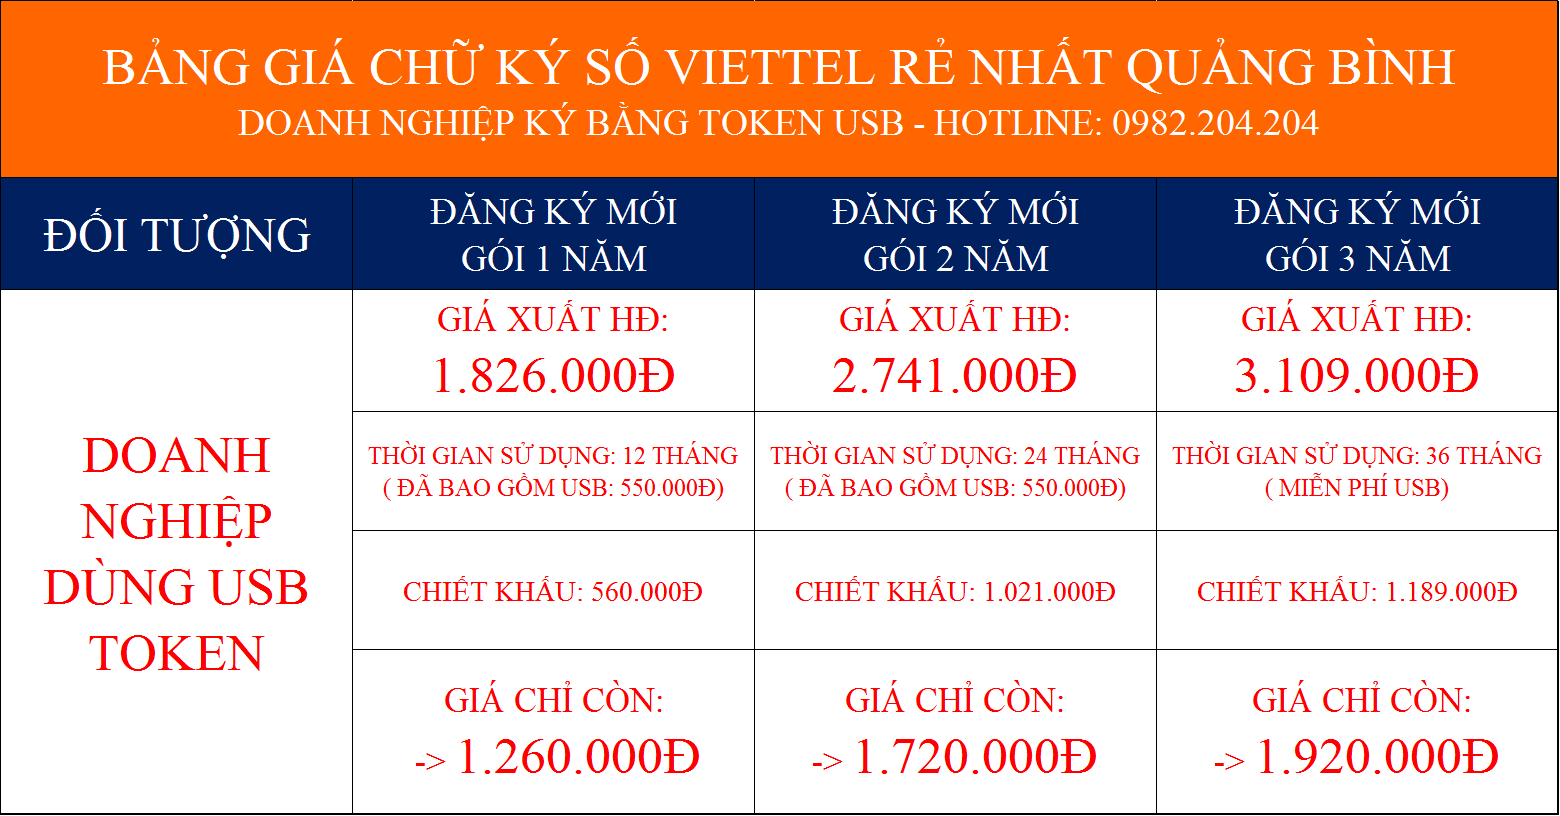 Bảng giá chữ ký số Viettel rẻ nhất Quảng Bình